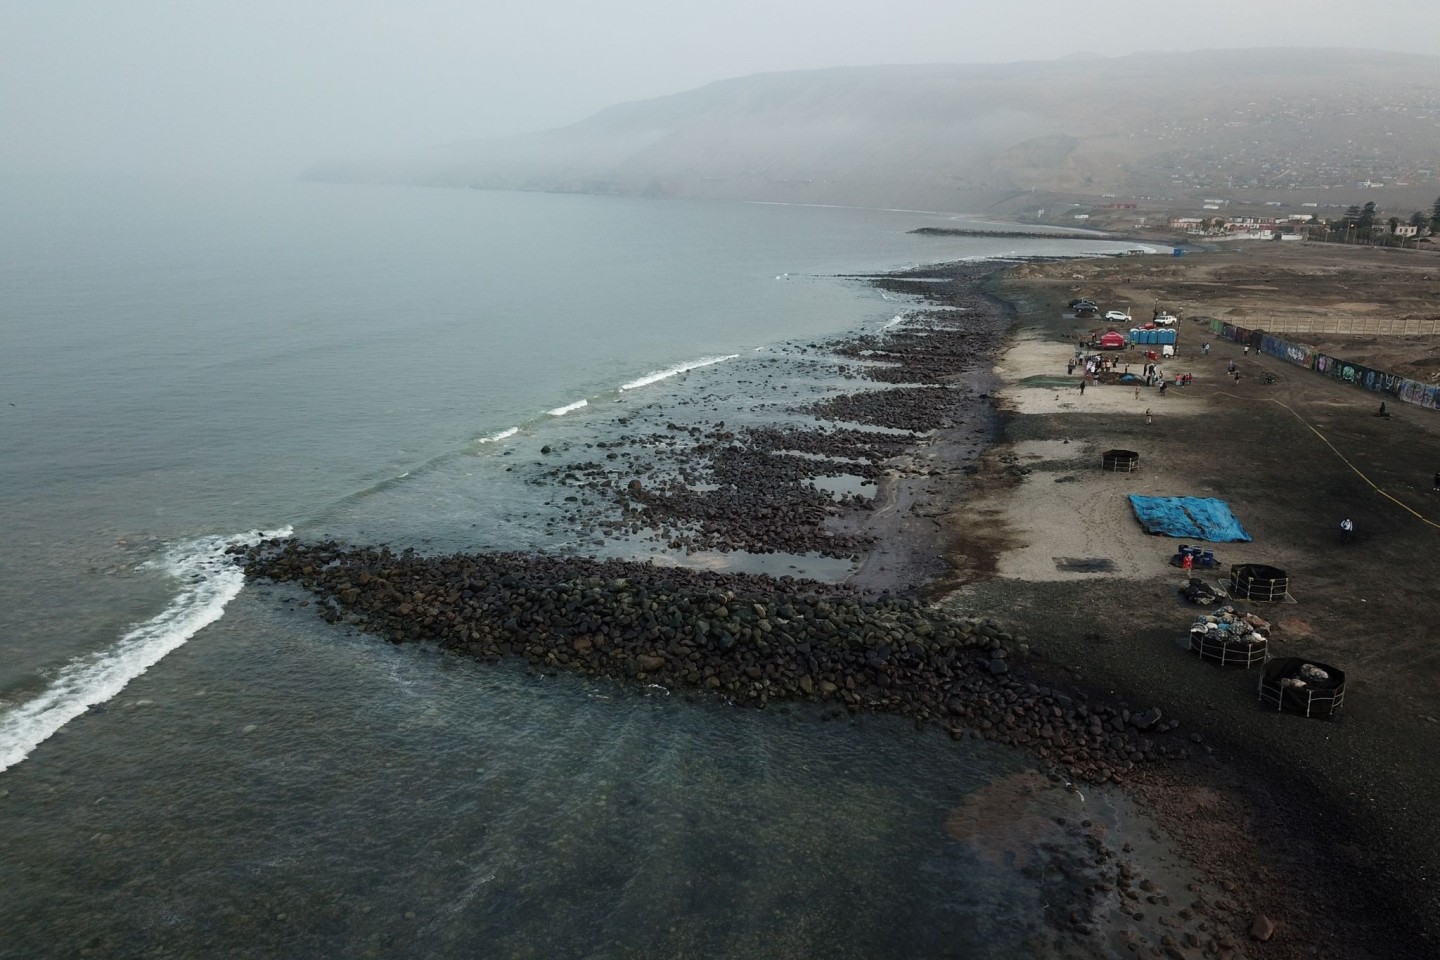 Das Öl hat nördlich der peruanischen Hauptstadt Lima mehrere Strände verschmutzt.